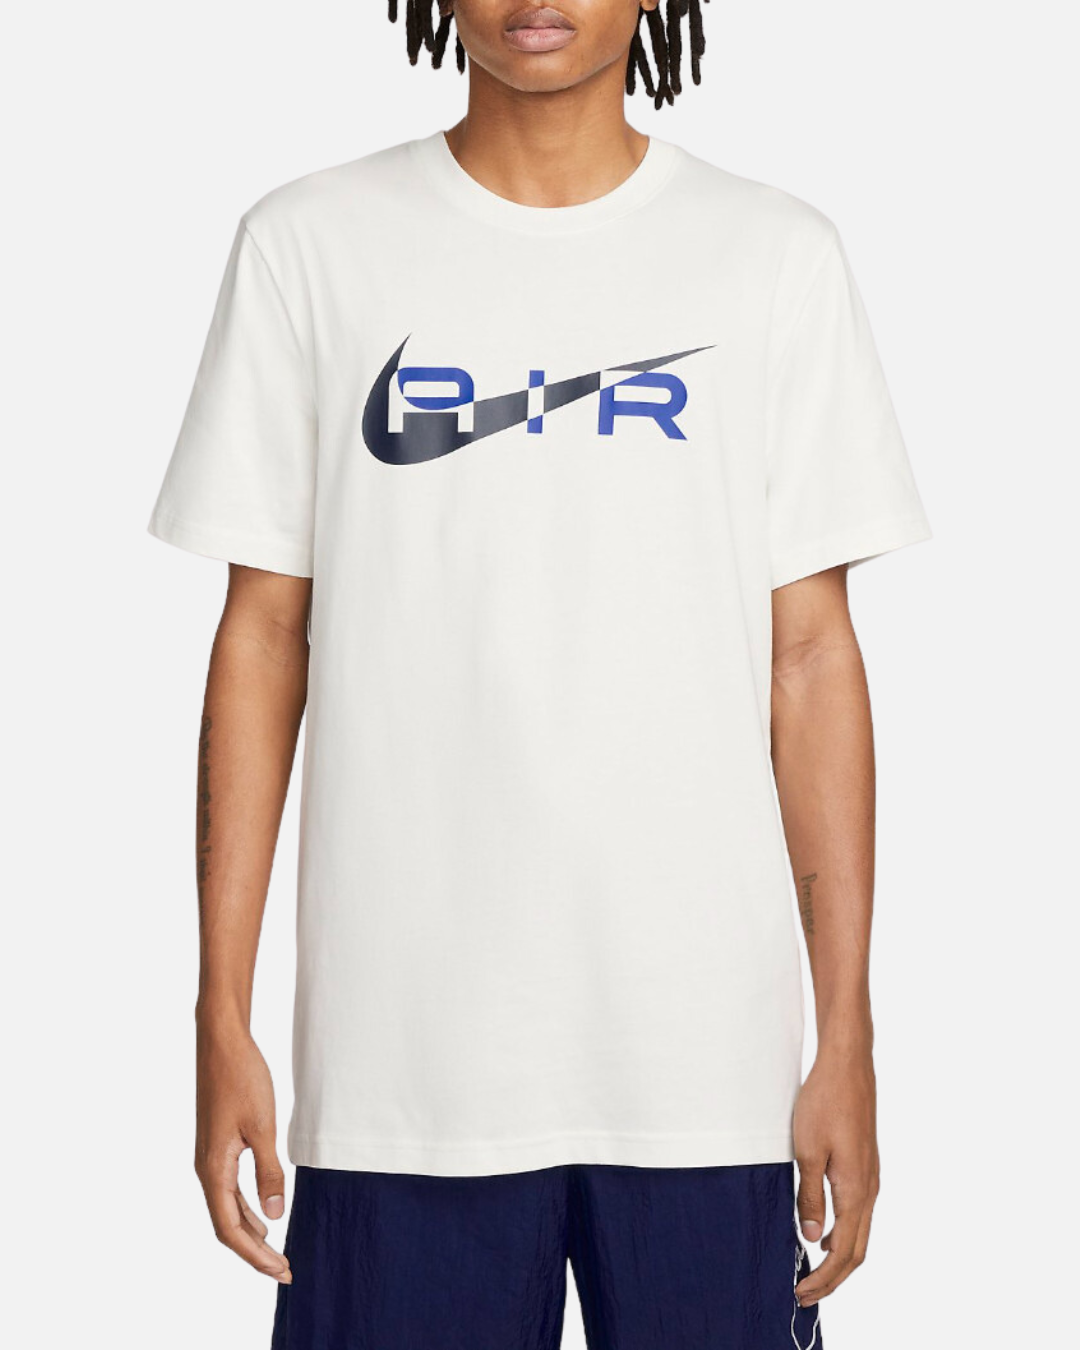 Nike Air Graphic T-Shirt - White/Black/Blue